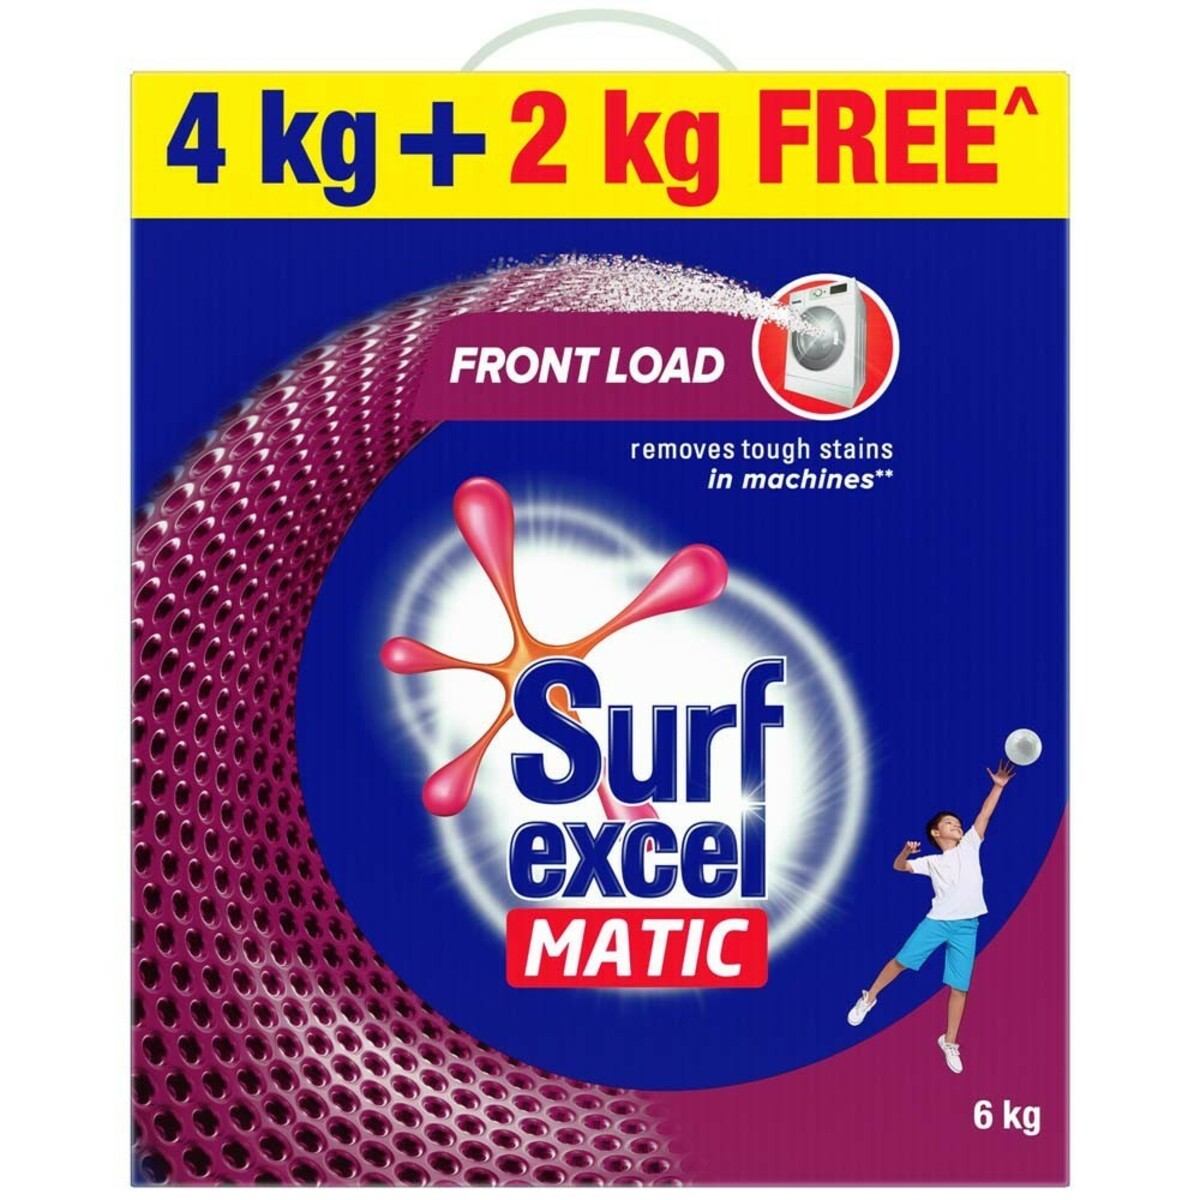 Surf Excel Matic Front Load Powder 4kg + 2kg Free